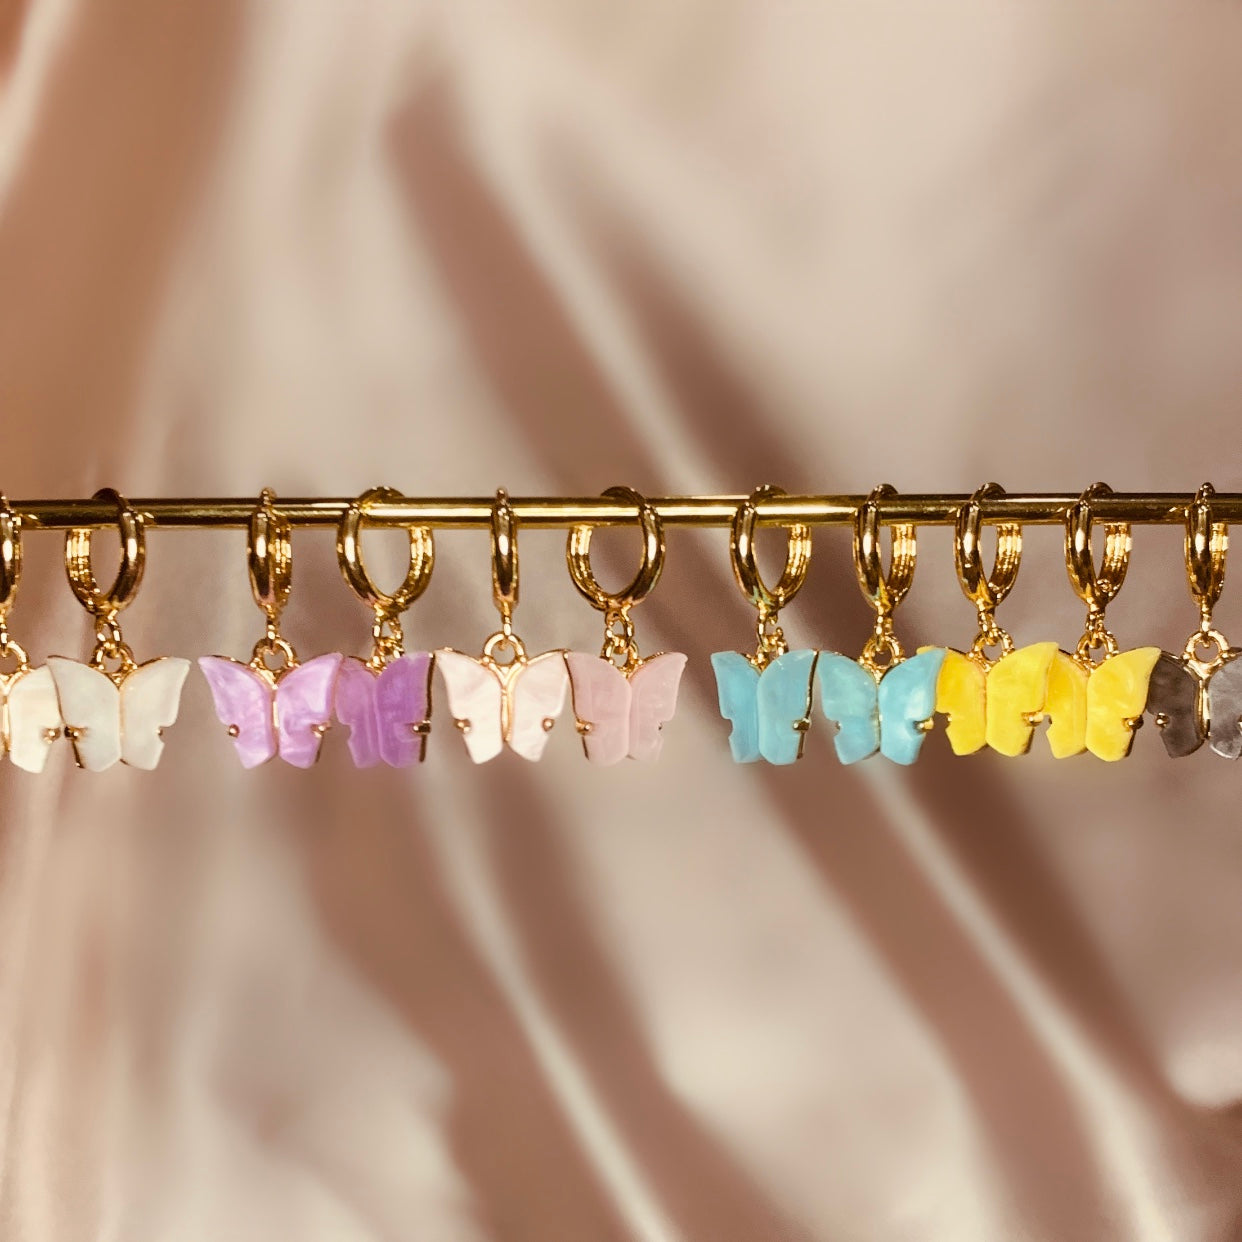 14K Gold-Plated Butterfly earrings